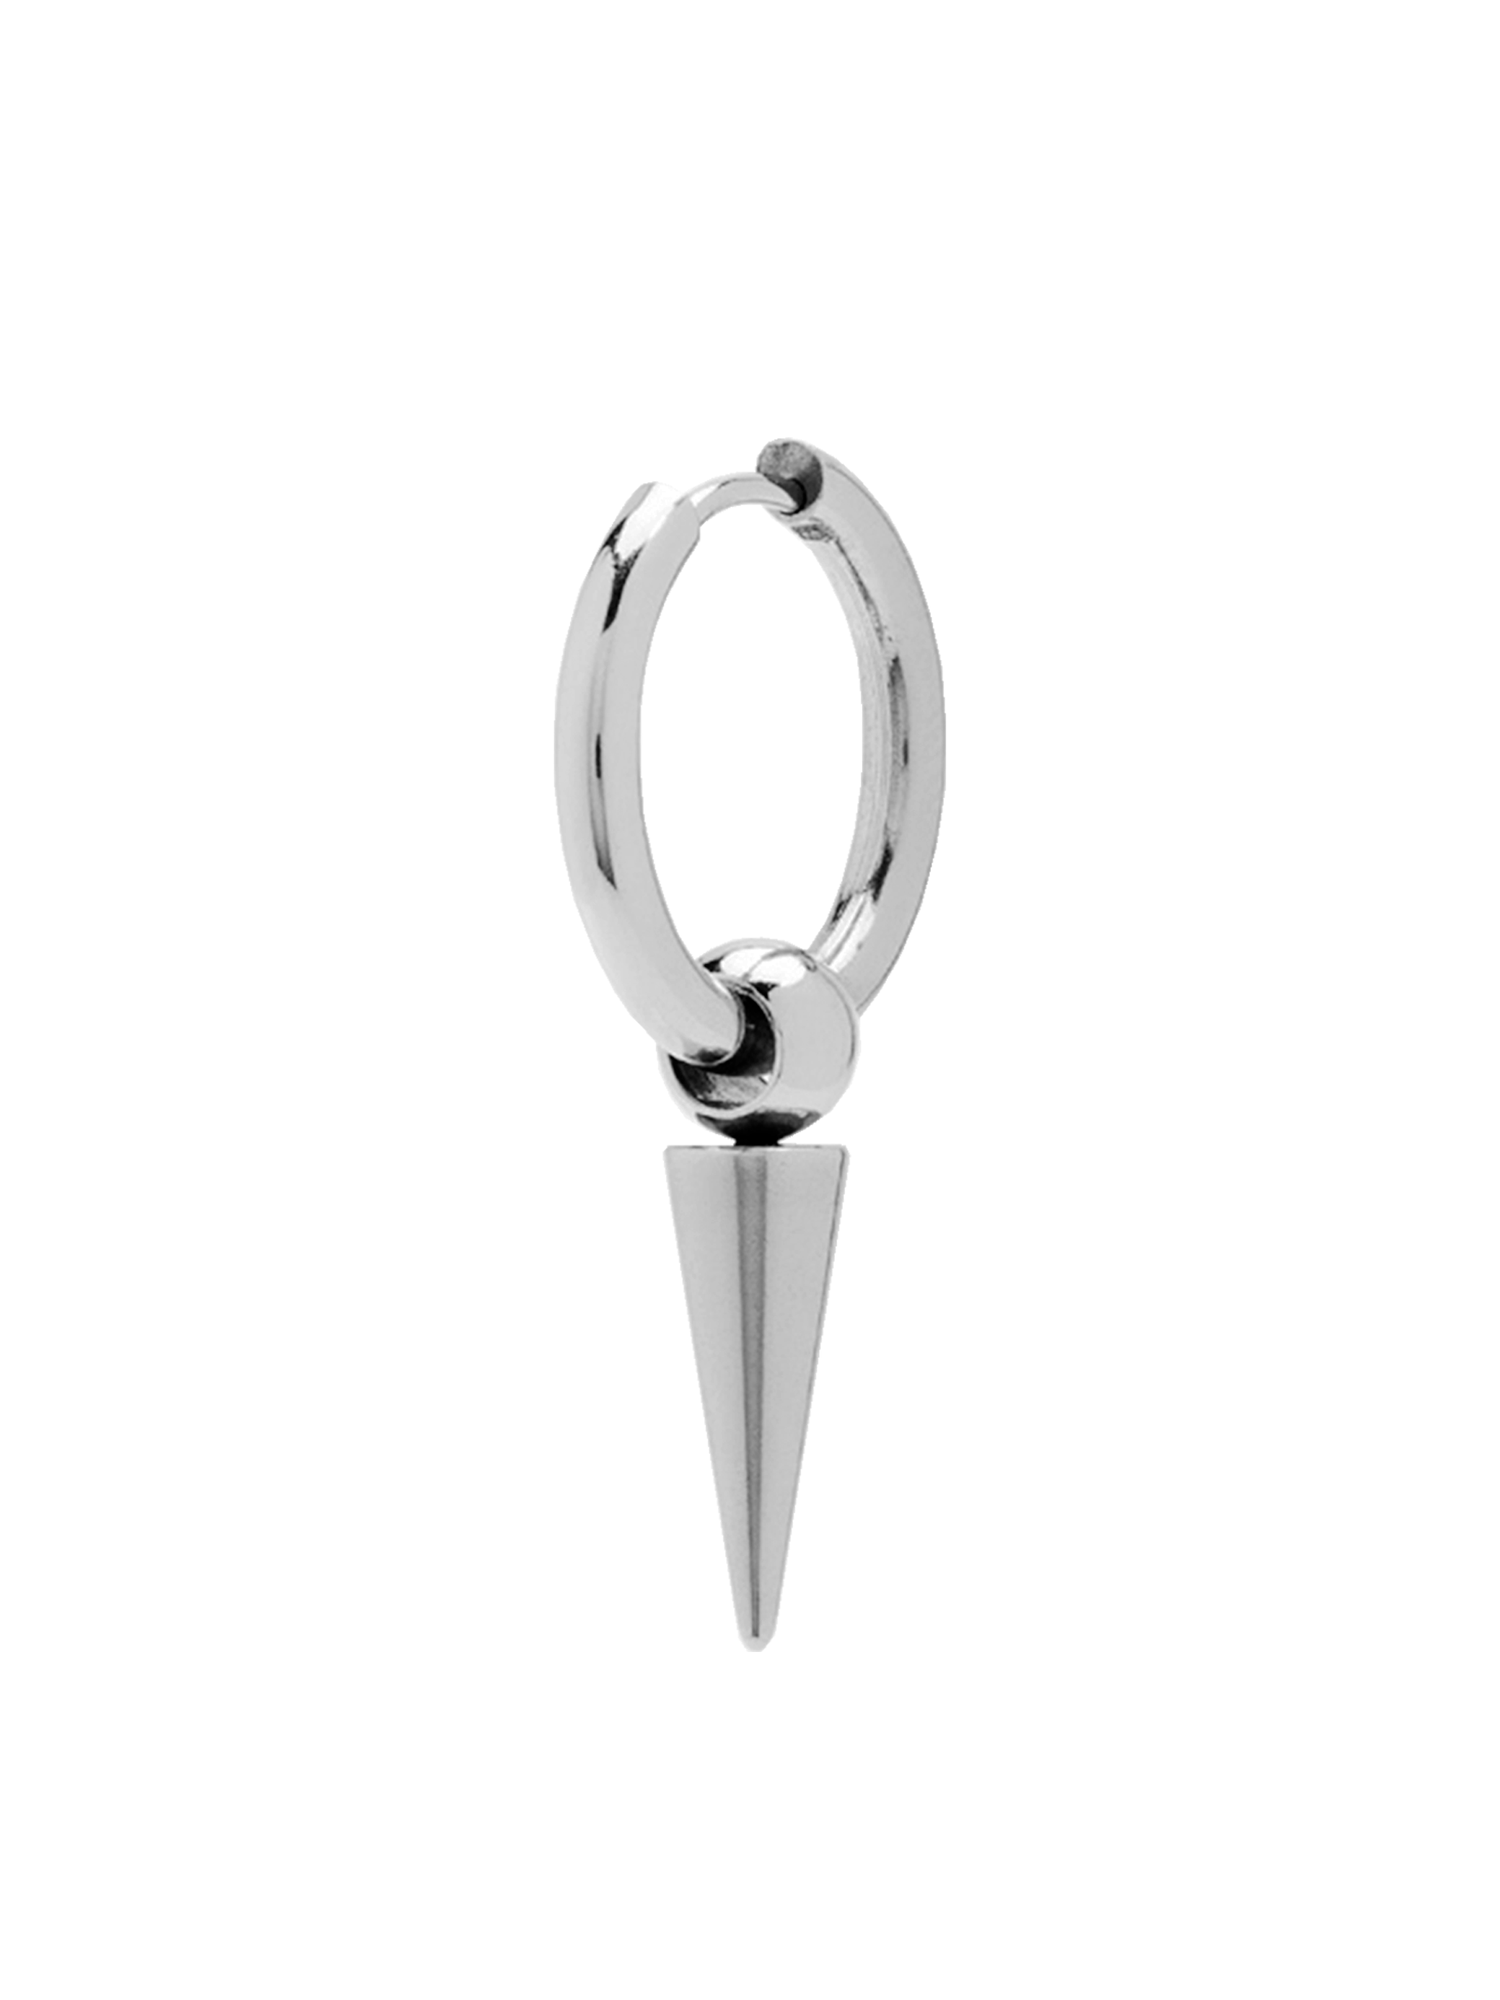 Моносерьга LUMINORA LUMINORA "PIN", размер/диаметр 30 мм, серебряный, серый